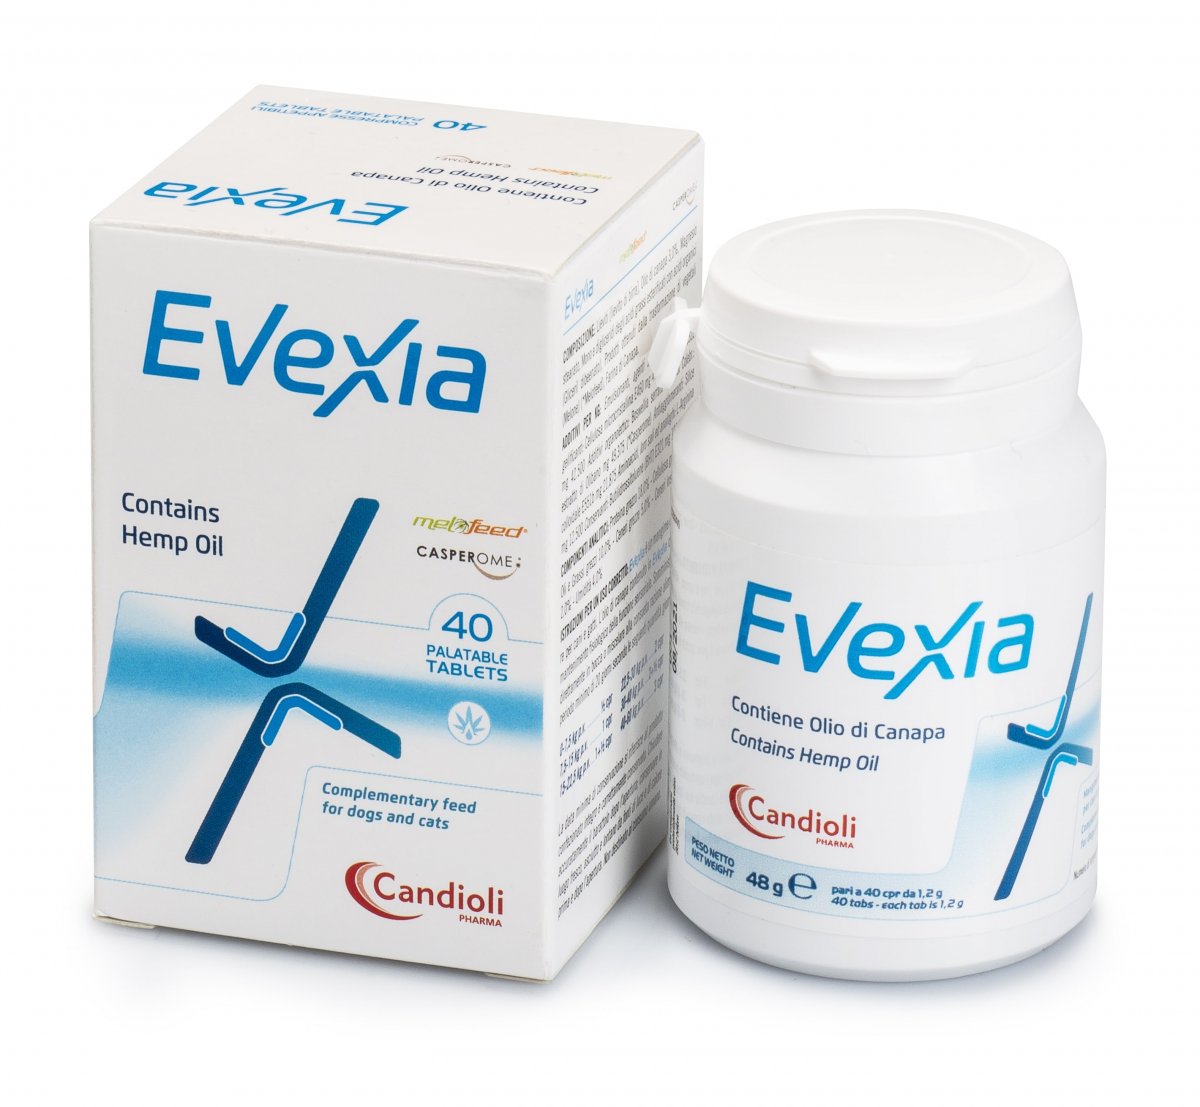 Evexia/Hexia with hemp oil